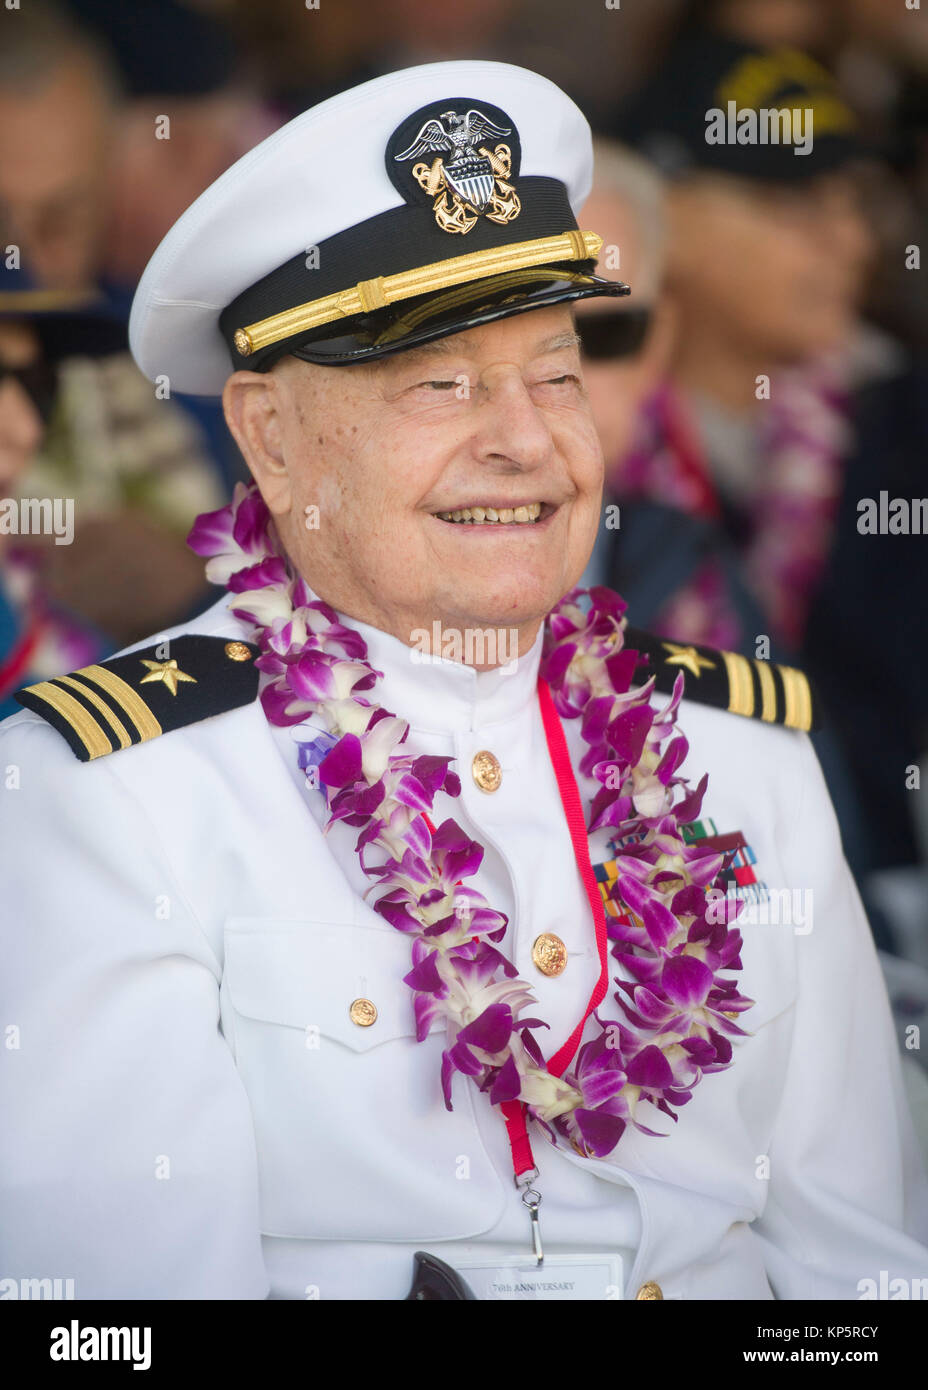 La Segunda Guerra Mundial Pearl Harbor el veterano Lou Conter asiste al 76º aniversario del ataque a Pearl Harbor y Oahu ceremonia en la base conjunta Harbor-Hickam Pearl El 7 de diciembre de 2017 en Pearl Harbor, Hawai. (Foto por Nardel Gervasio via Planetpix) Foto de stock